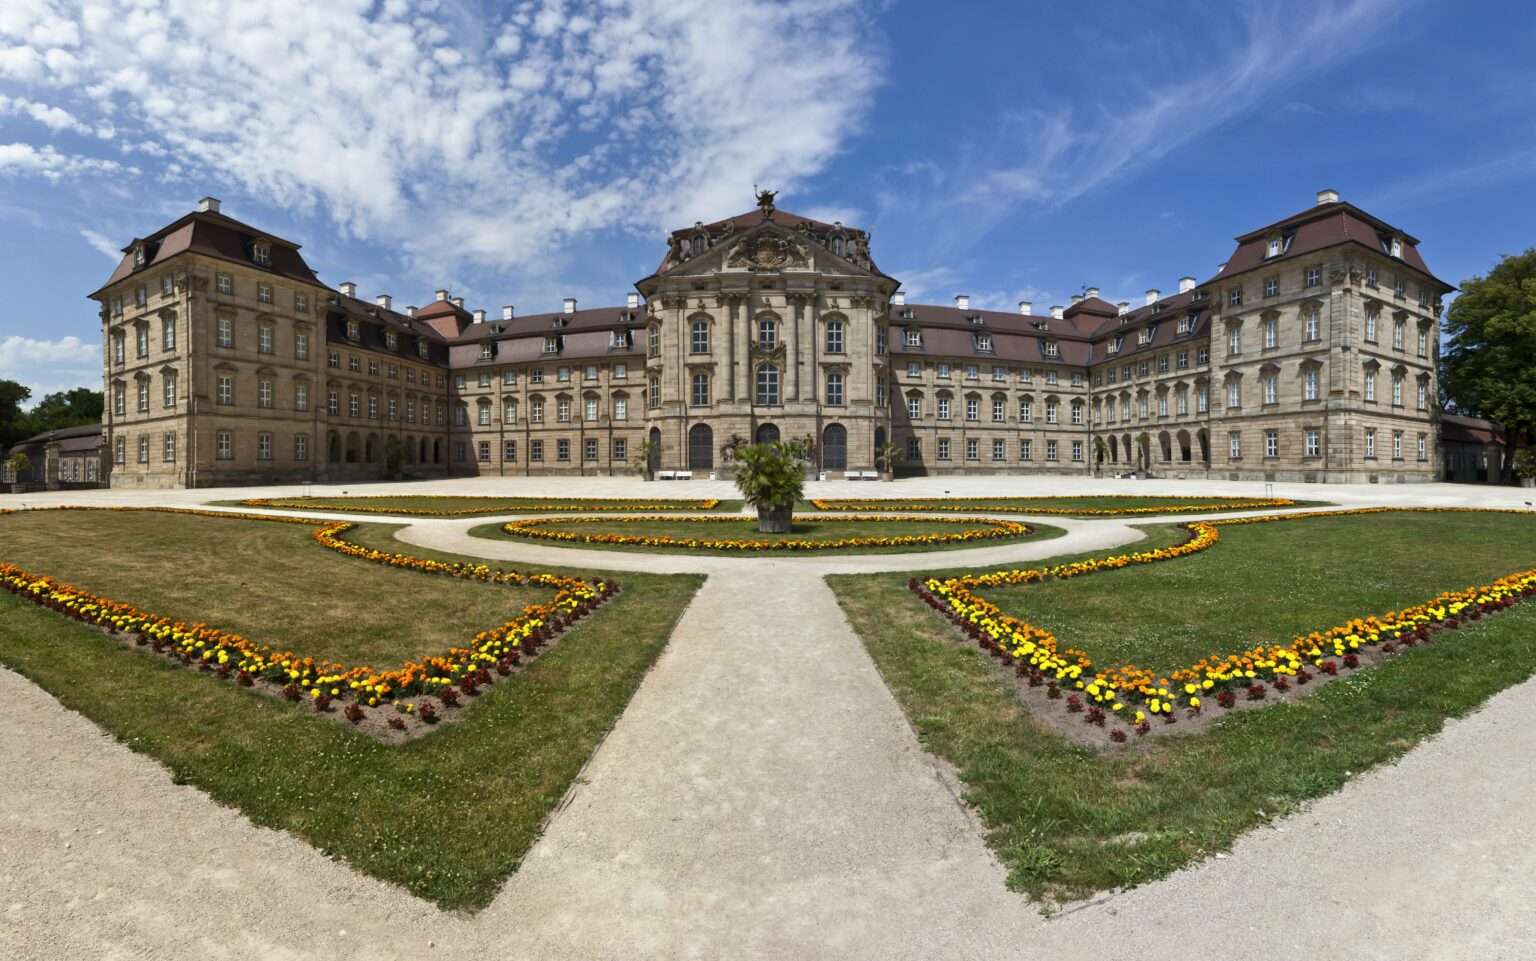 Schloss Weissenstein wurde zwischen 1711 und 1718 unter Lothar Franz von Schönborn, Kurfürst von Mainz, im oberfränkischen Pommersfelden erbaut. (